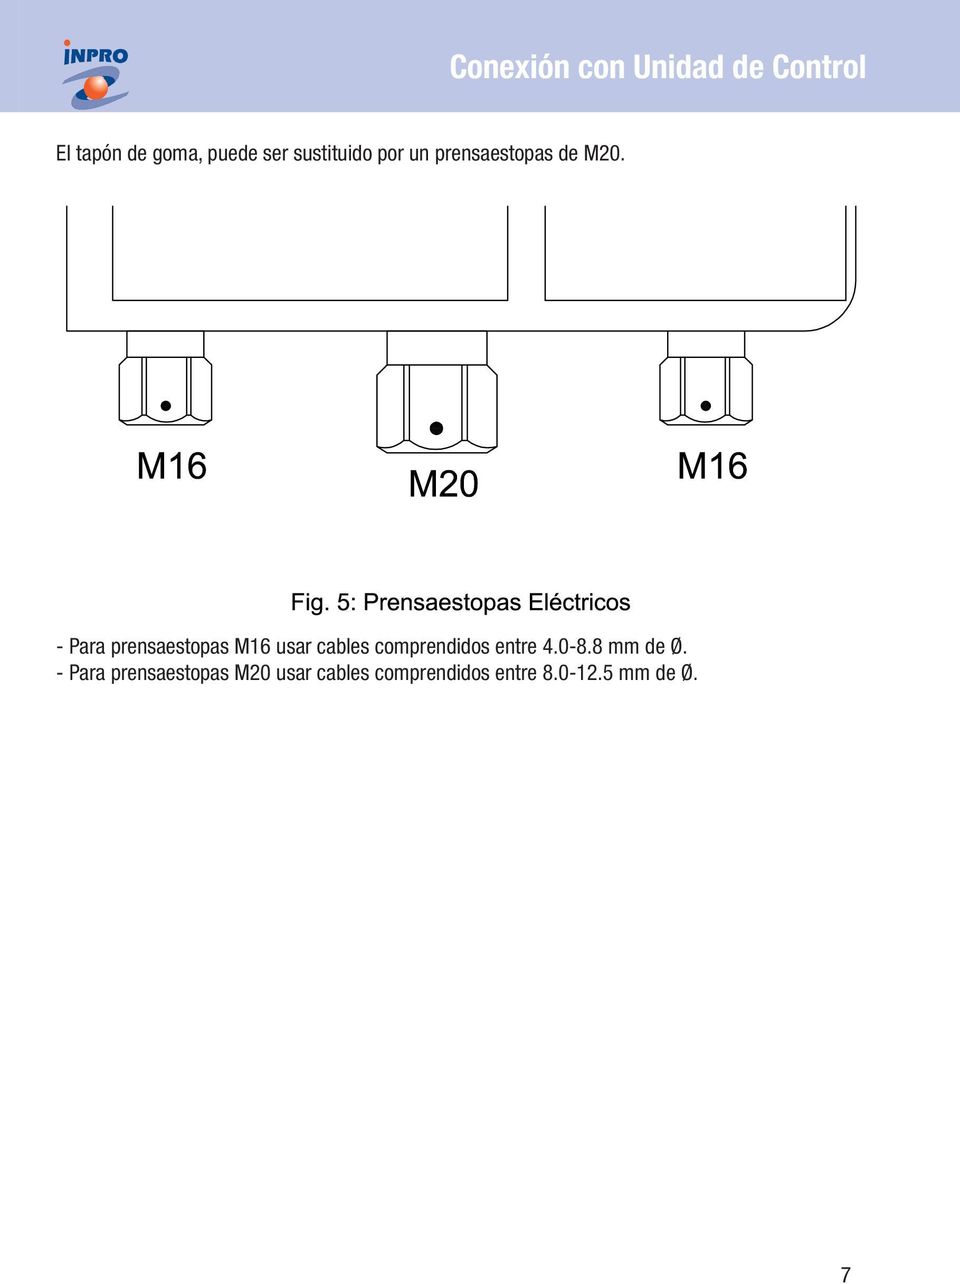 - Para prensaestopas M16 usar cables comprendidos entre 4.0-8.